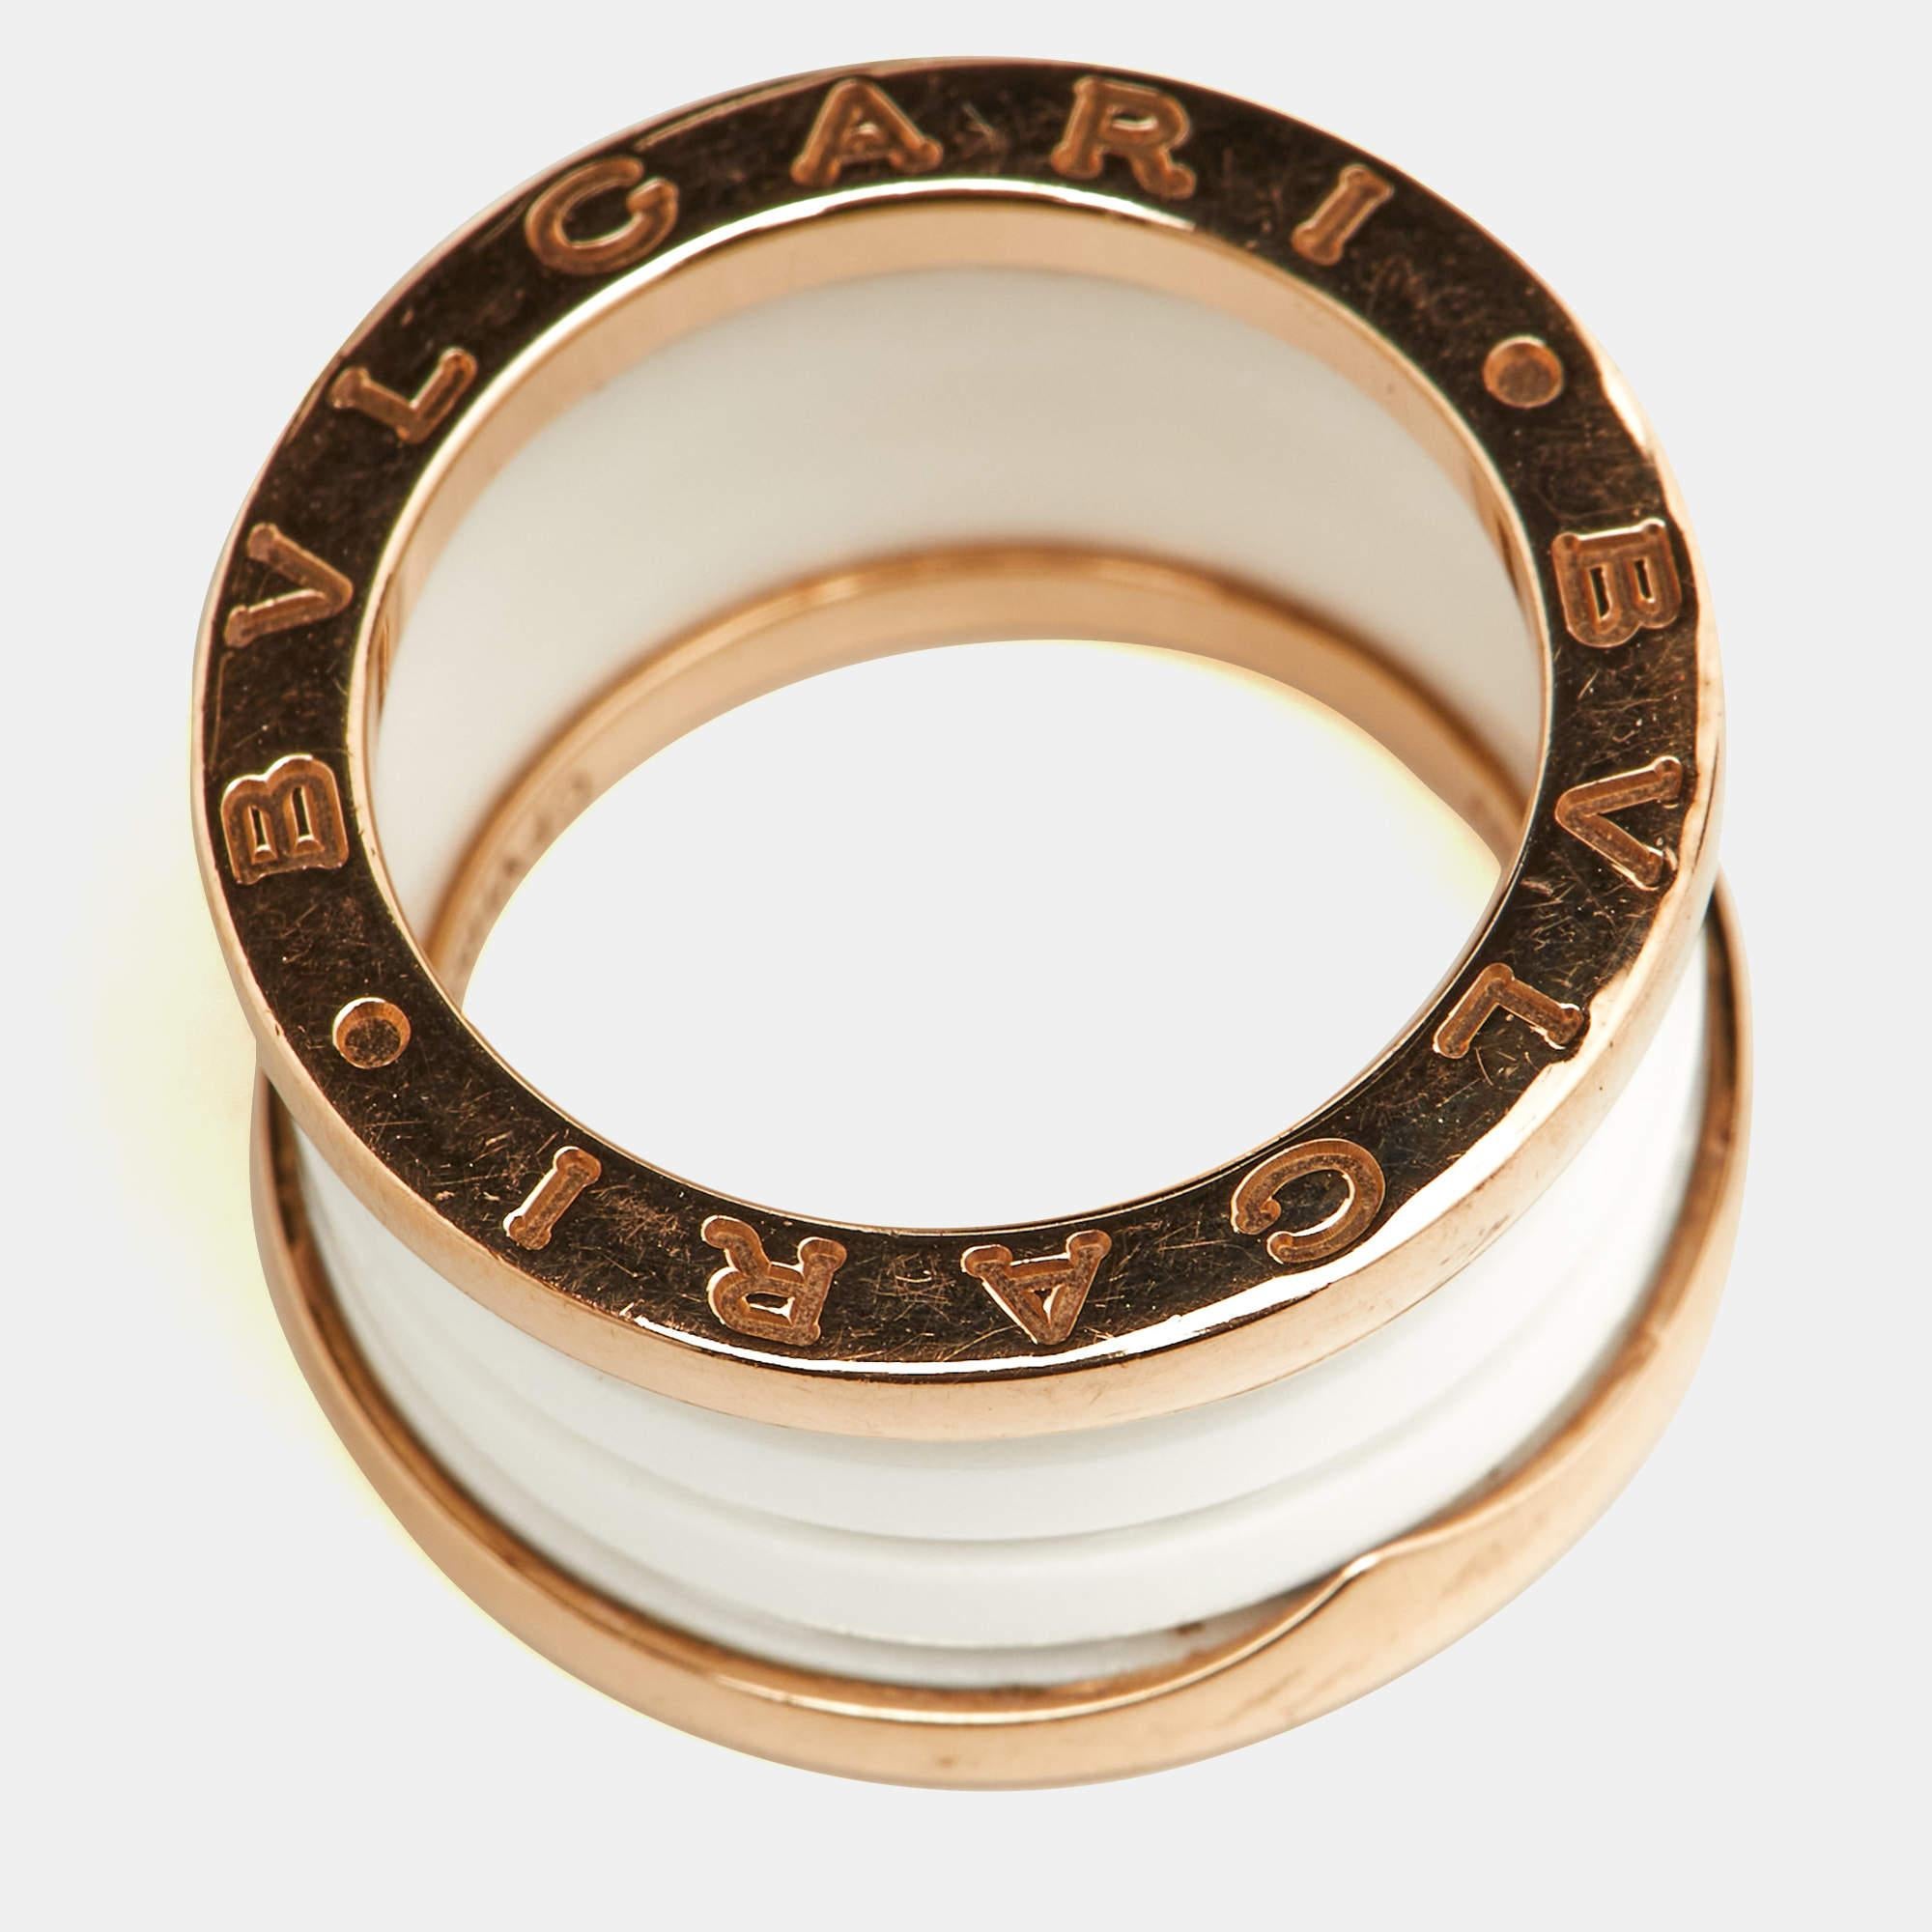 Bvlgari B.Zero1 White Ceramic 18k Rose Gold Band Ring Size 50 In Fair Condition For Sale In Dubai, Al Qouz 2